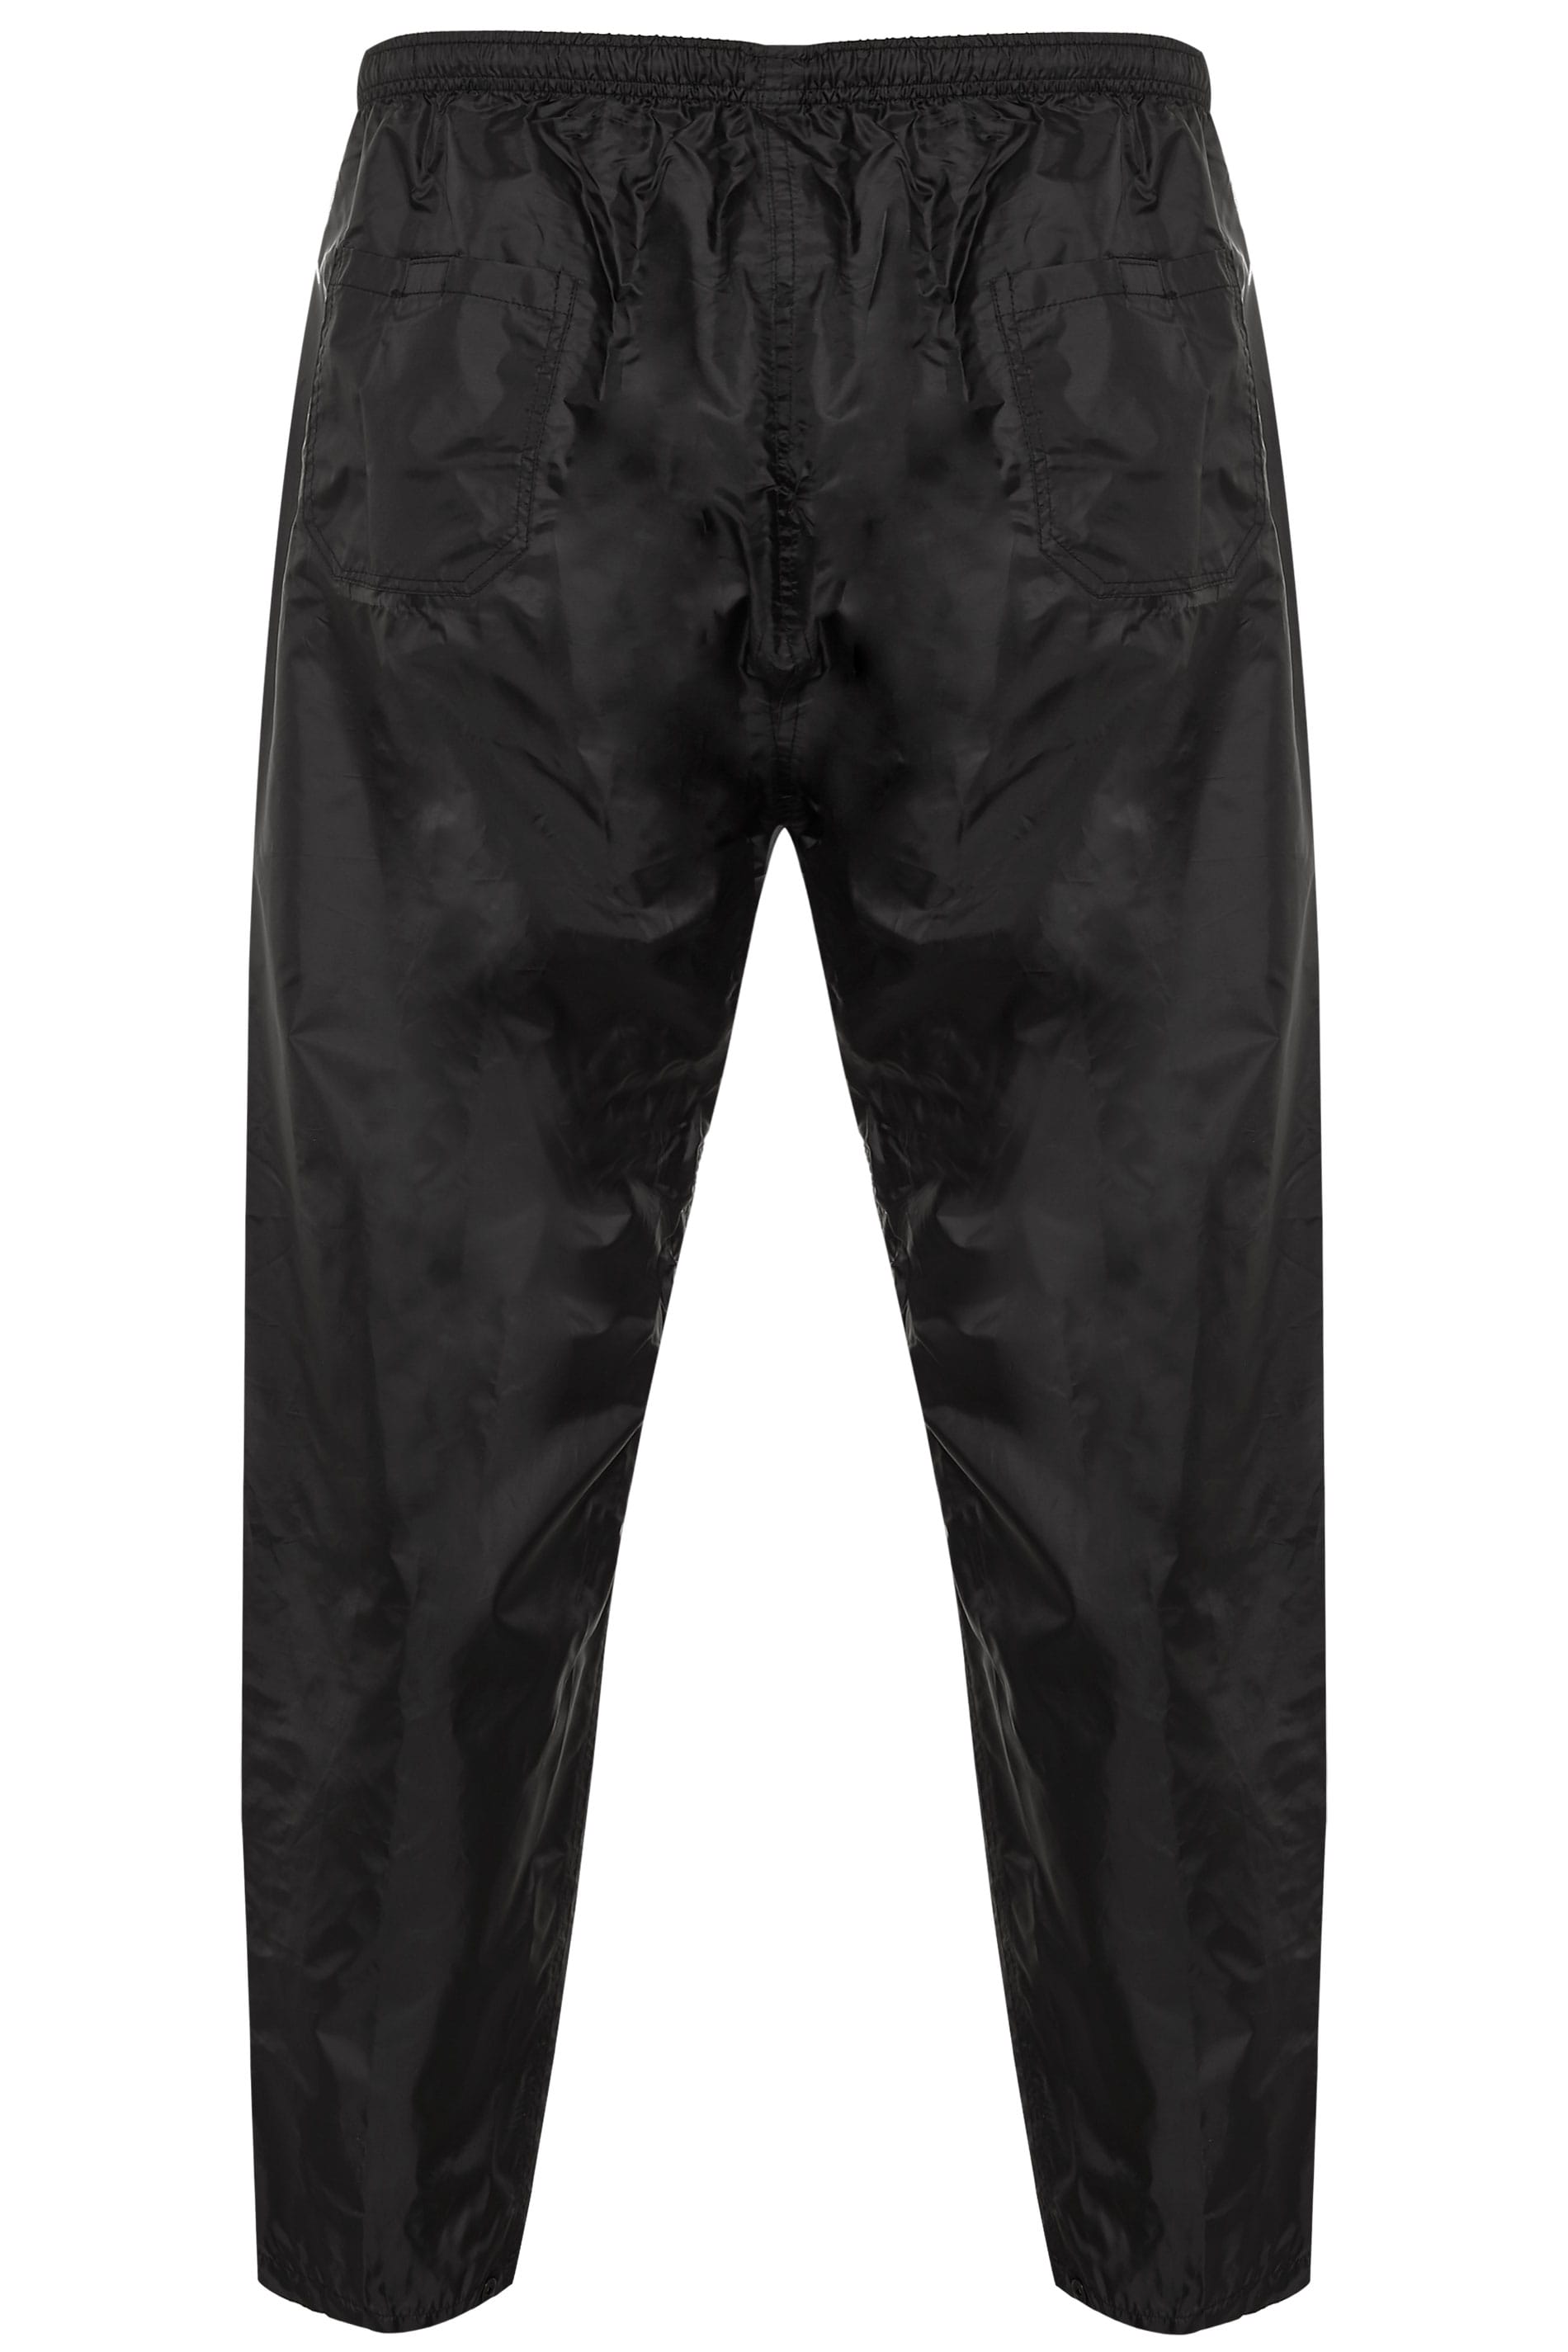 D555 Black Foldaway Waterproof Trousers | BadRhino